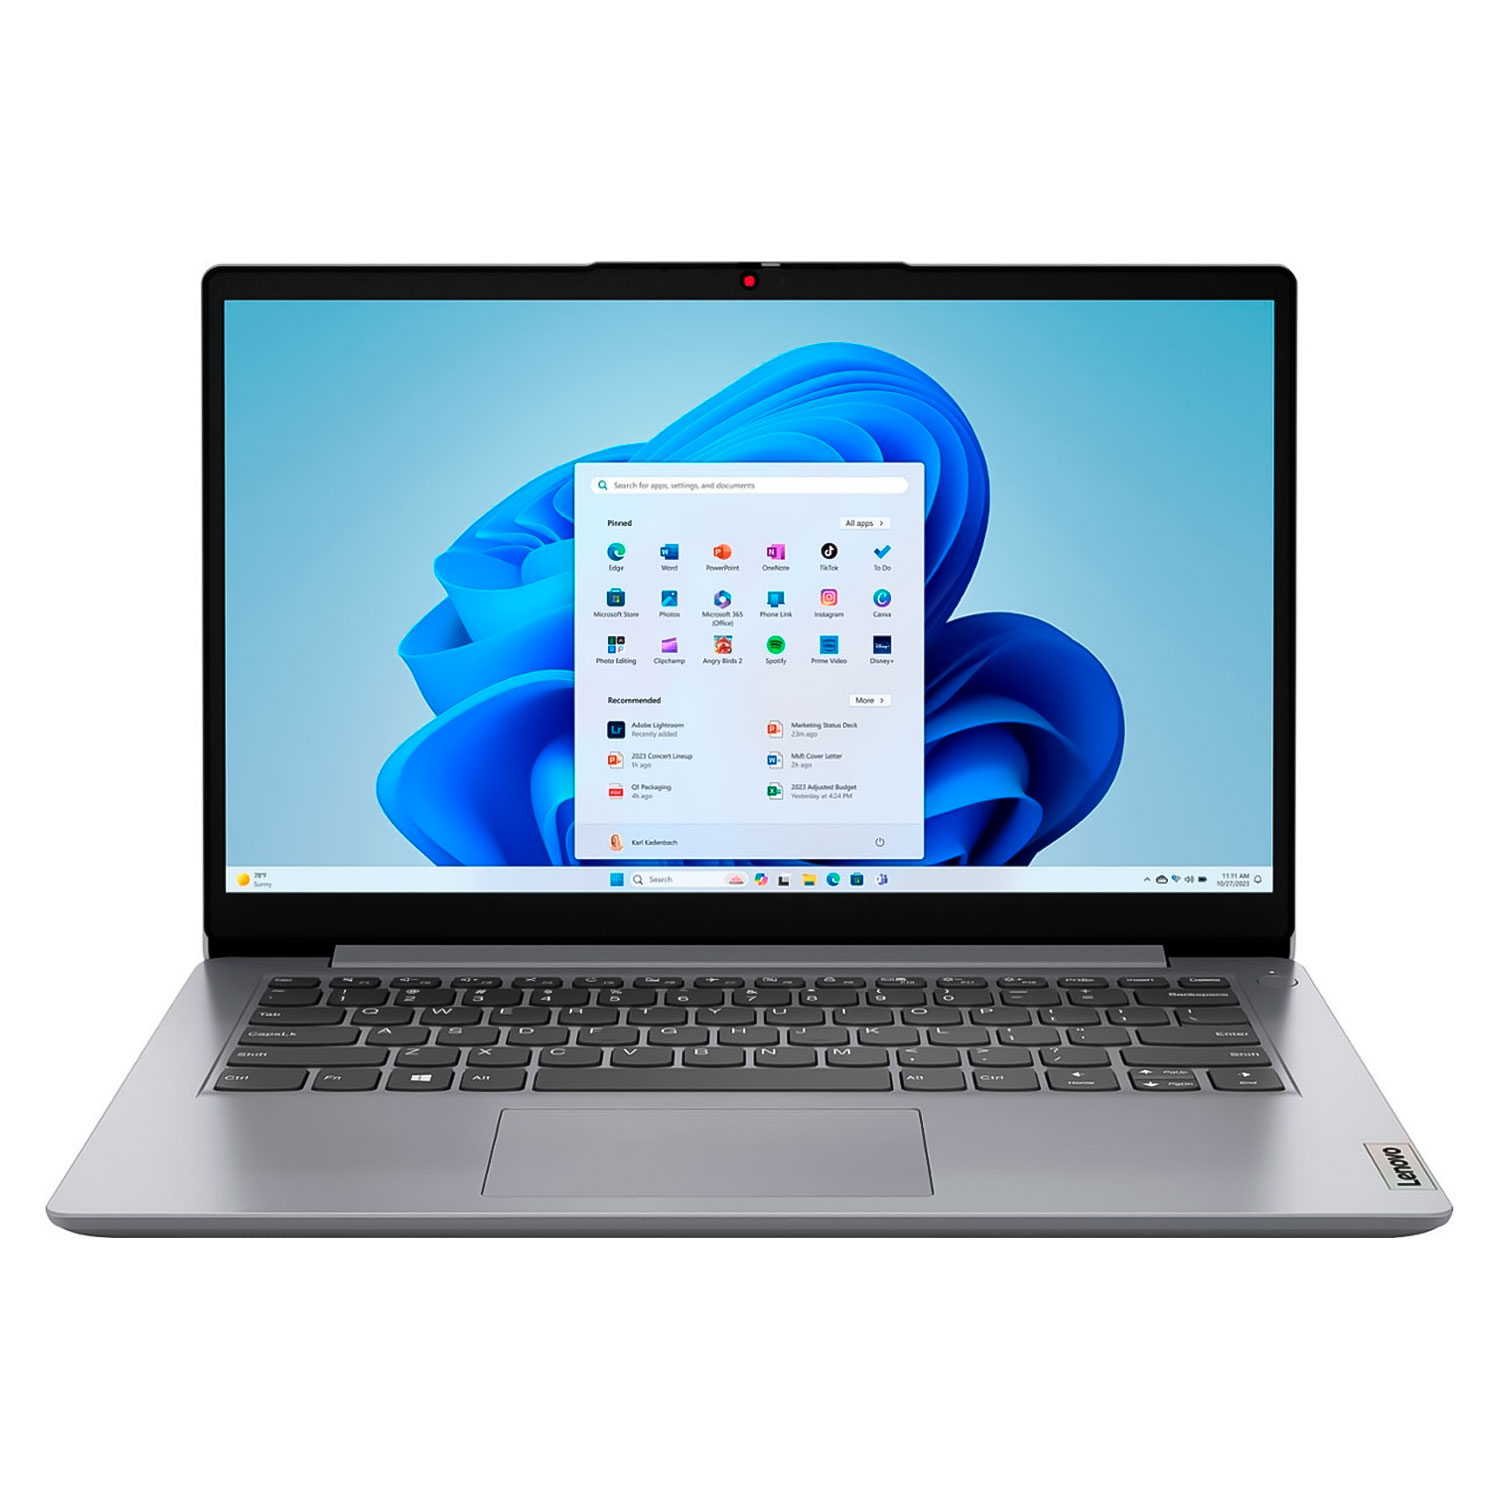 Notebook Lenovo IdeaPad 1 82V60022US 14" Intel Celeron N4020 64GB EMMC 4GB EAM - Cinza